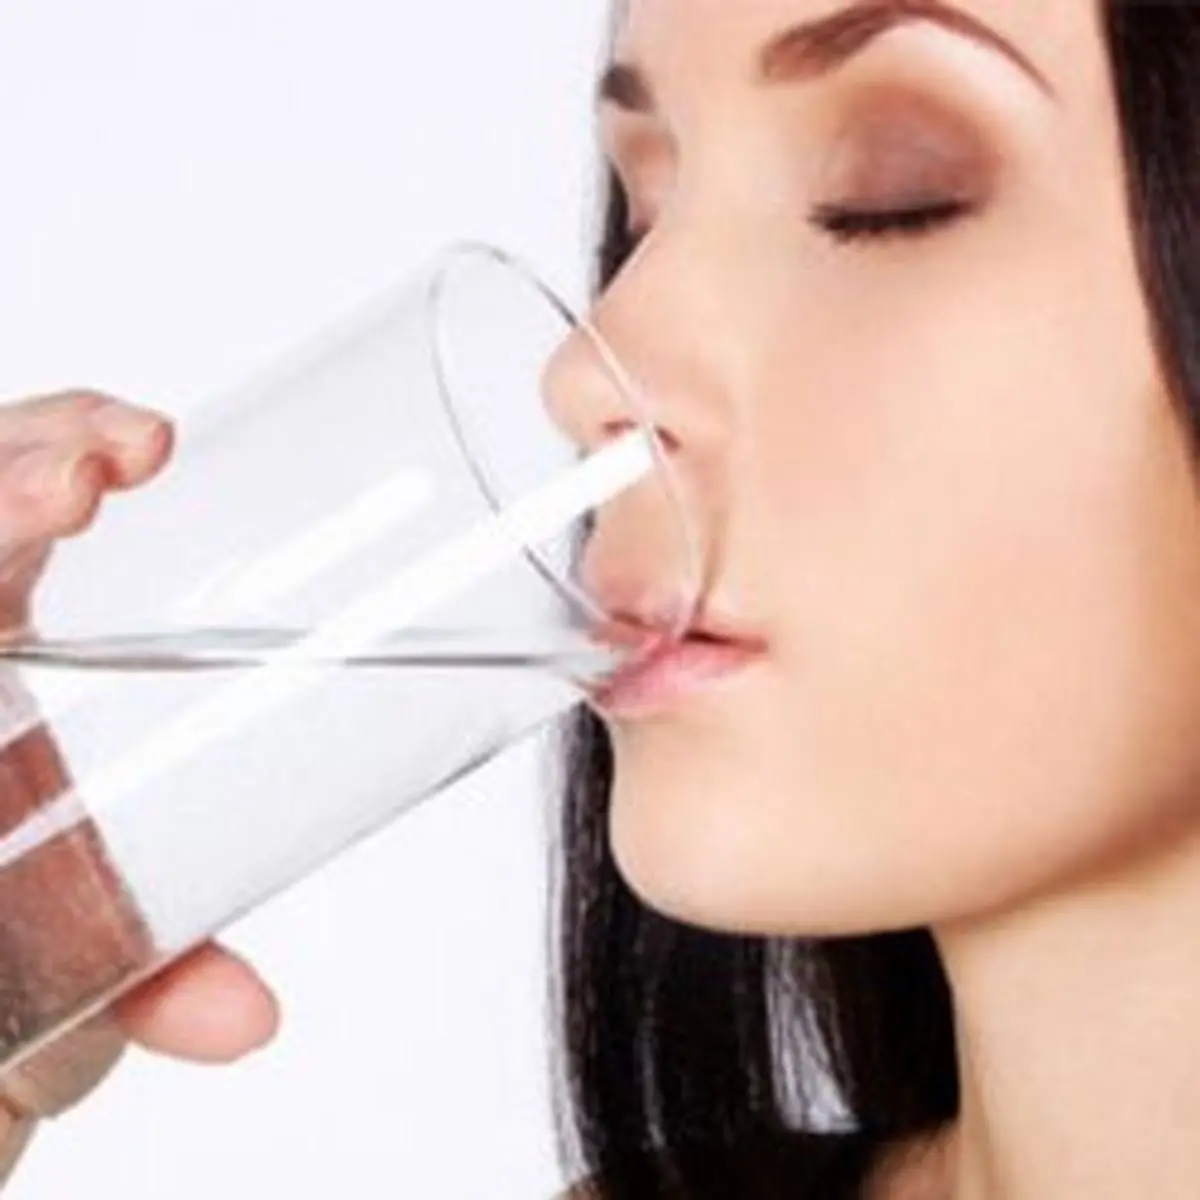  آیا با خوردن یک لیوان آب می توانید از استرس رهایی پیدا کنید؟